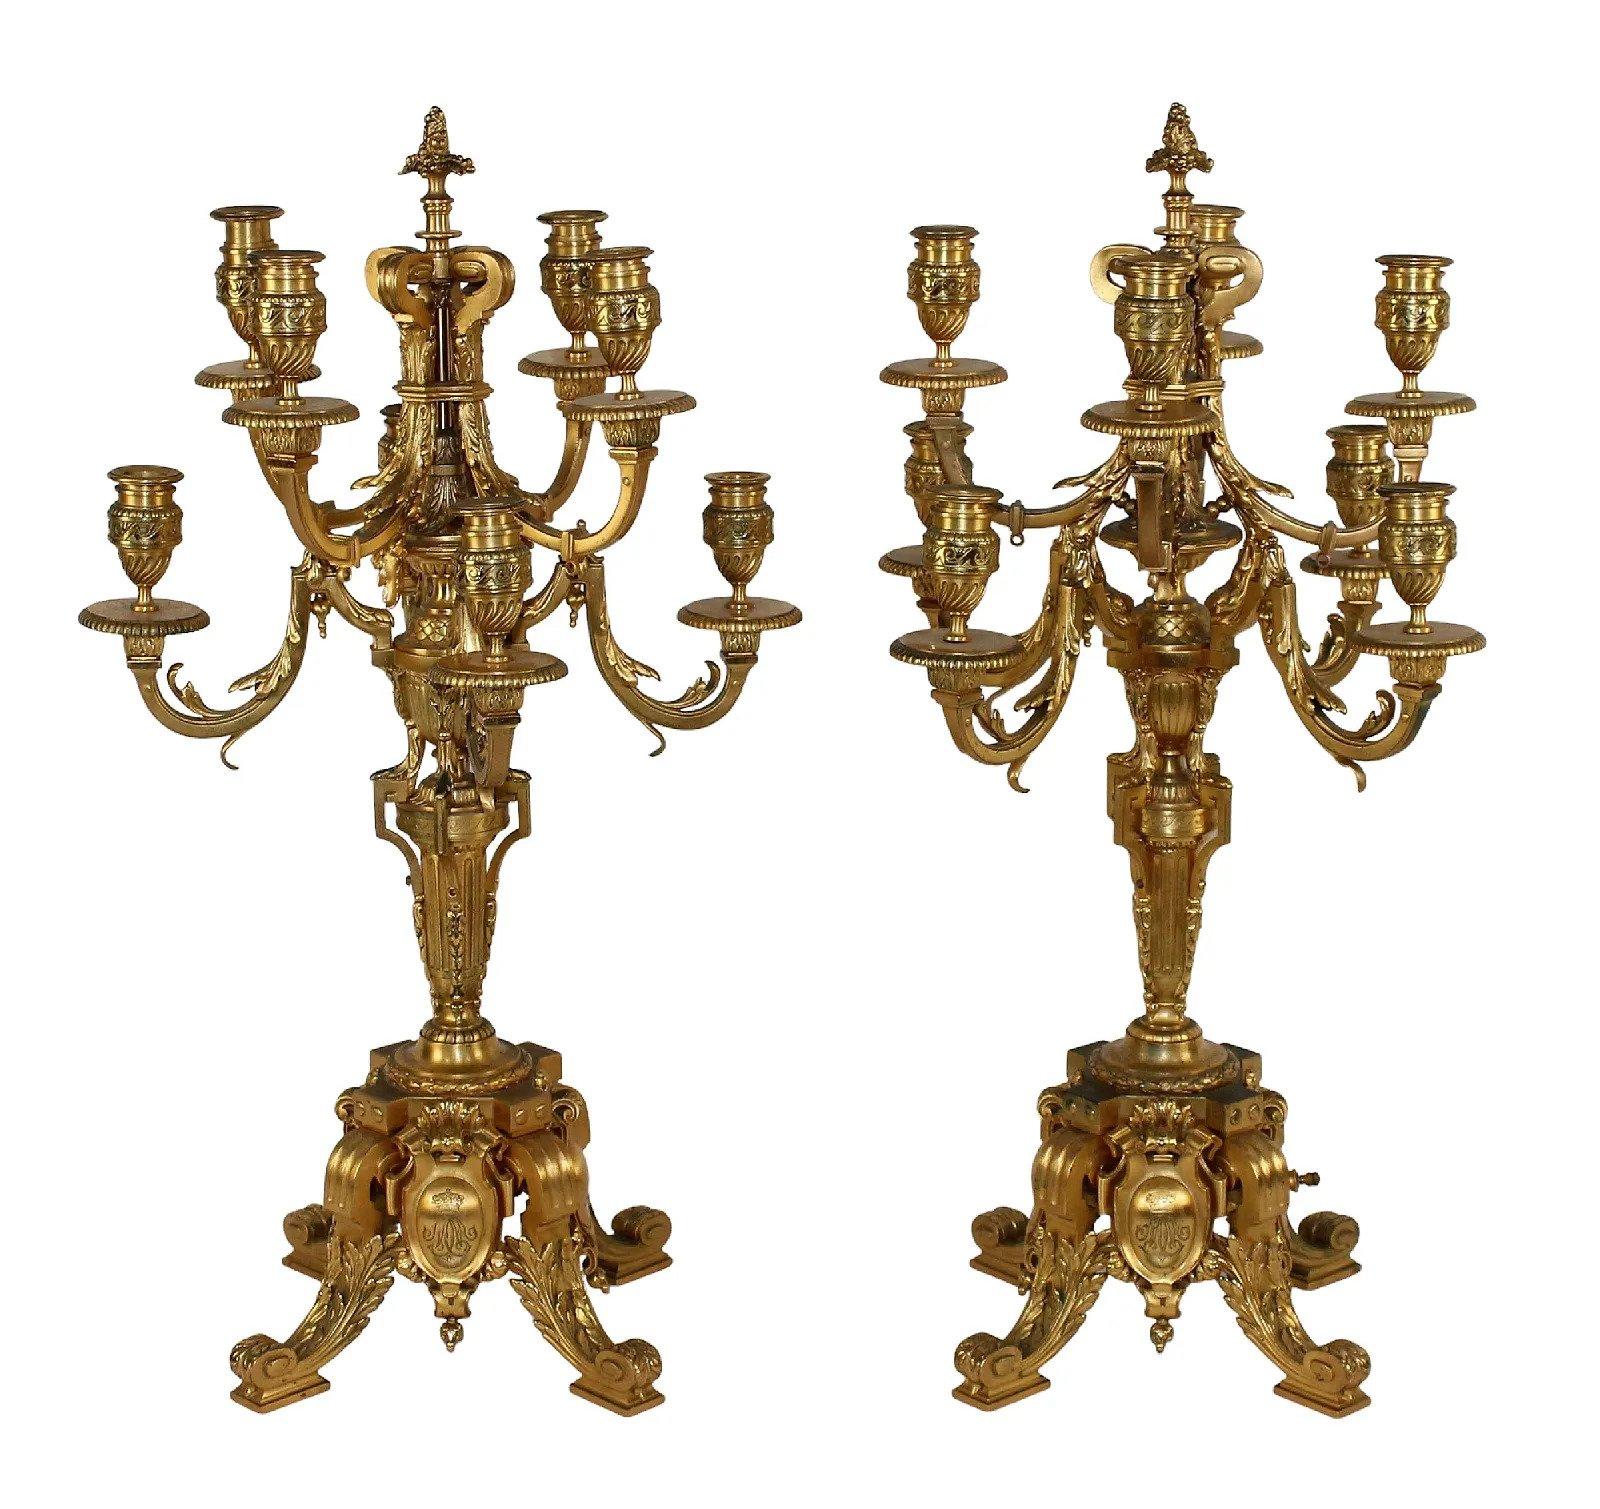 Superbe paire de candélabres Barbedienne en bronze doré à 8 bras. Marqué sur la base F, Barbedienne. Fin du 19e siècle. Mesures : Hauteur totale 27